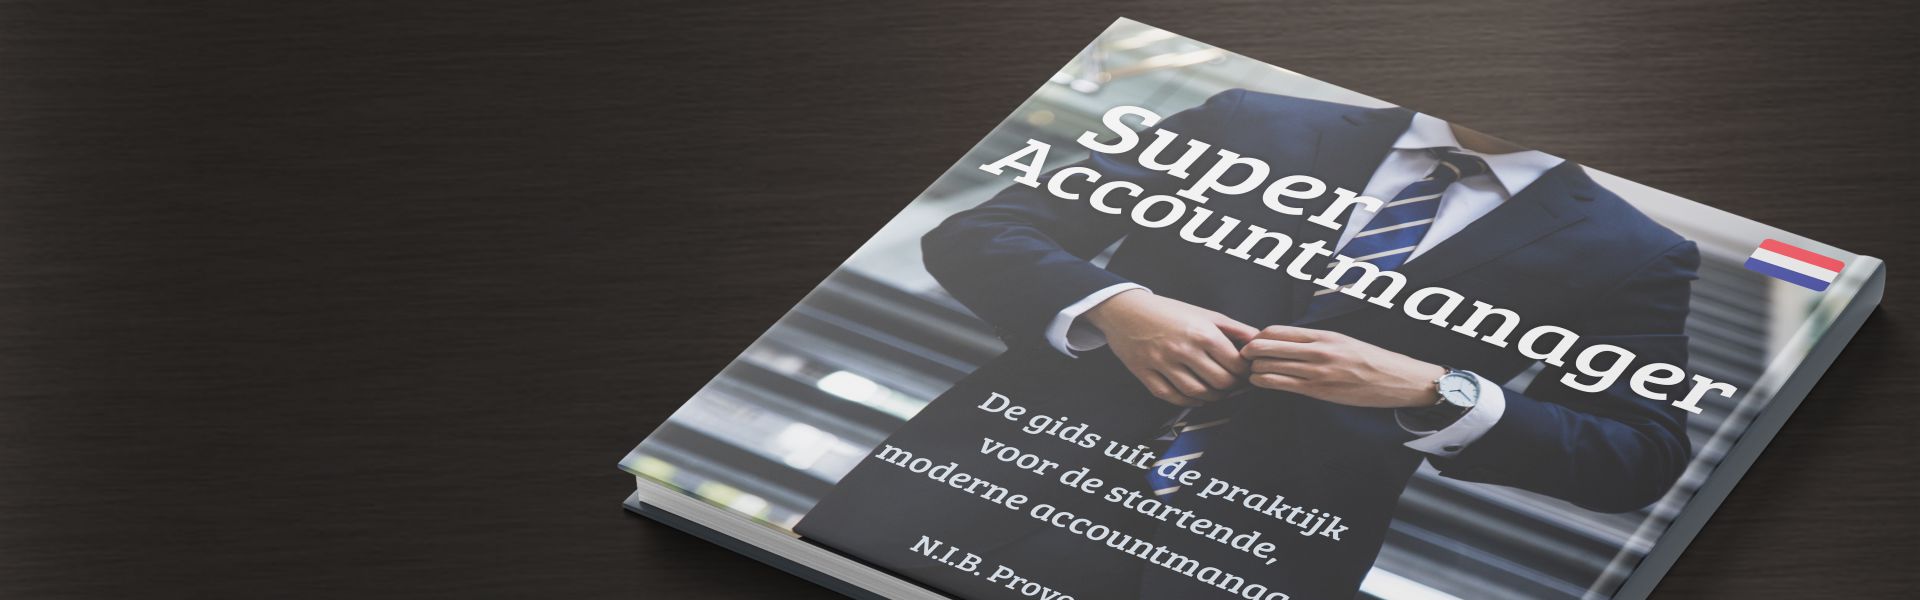 Super Accountmanager: de gids uit de praktijk voor de startende, moderne accountmanager